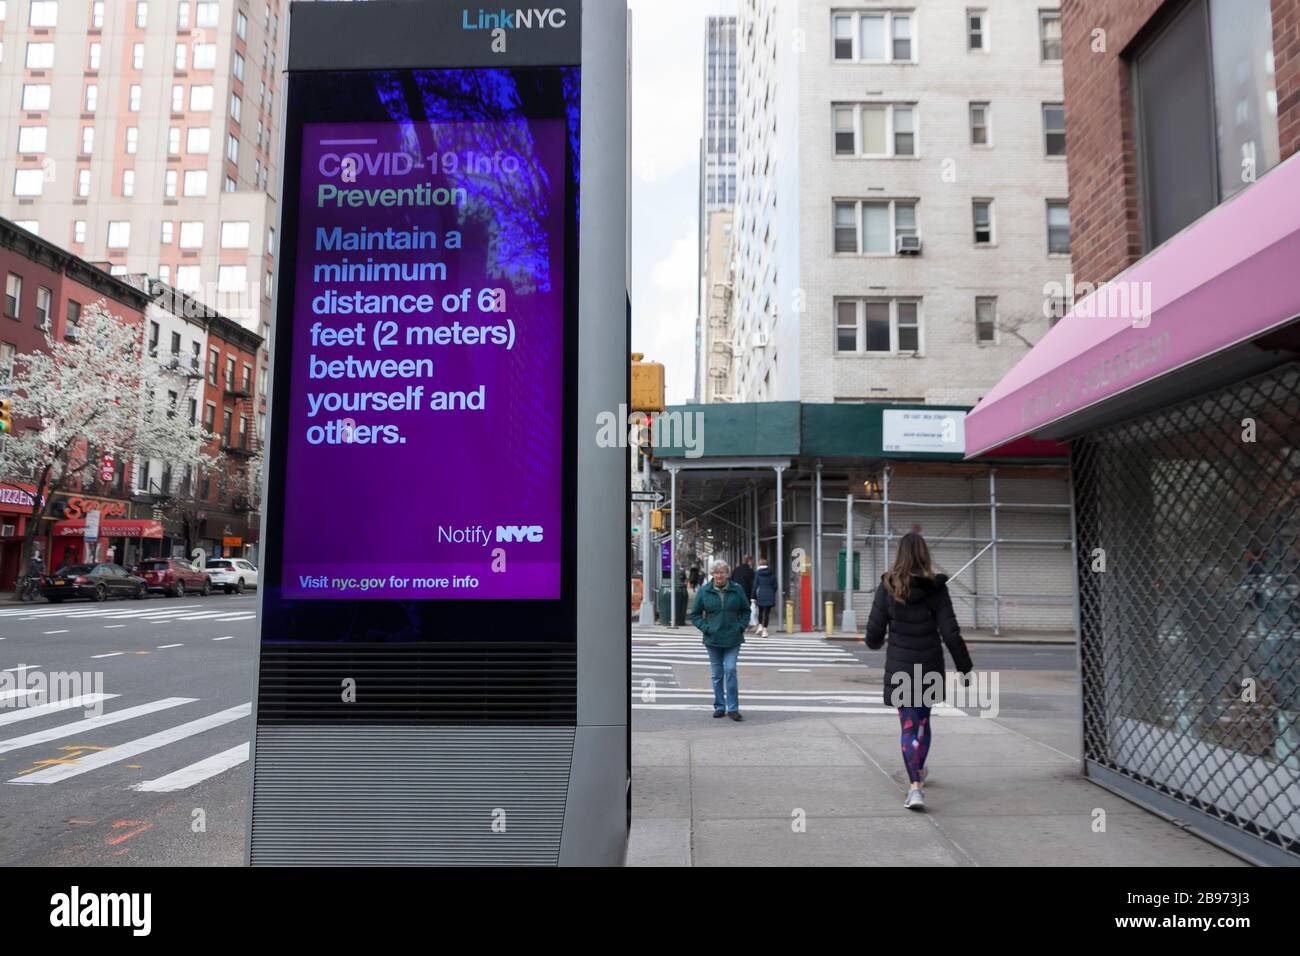 El kiosco digital LinkNYC muestra en la acera mensajes Covid-19 (coronavirus) y consejos sobre distanciamiento social a los neoyorquinos. Foto de stock